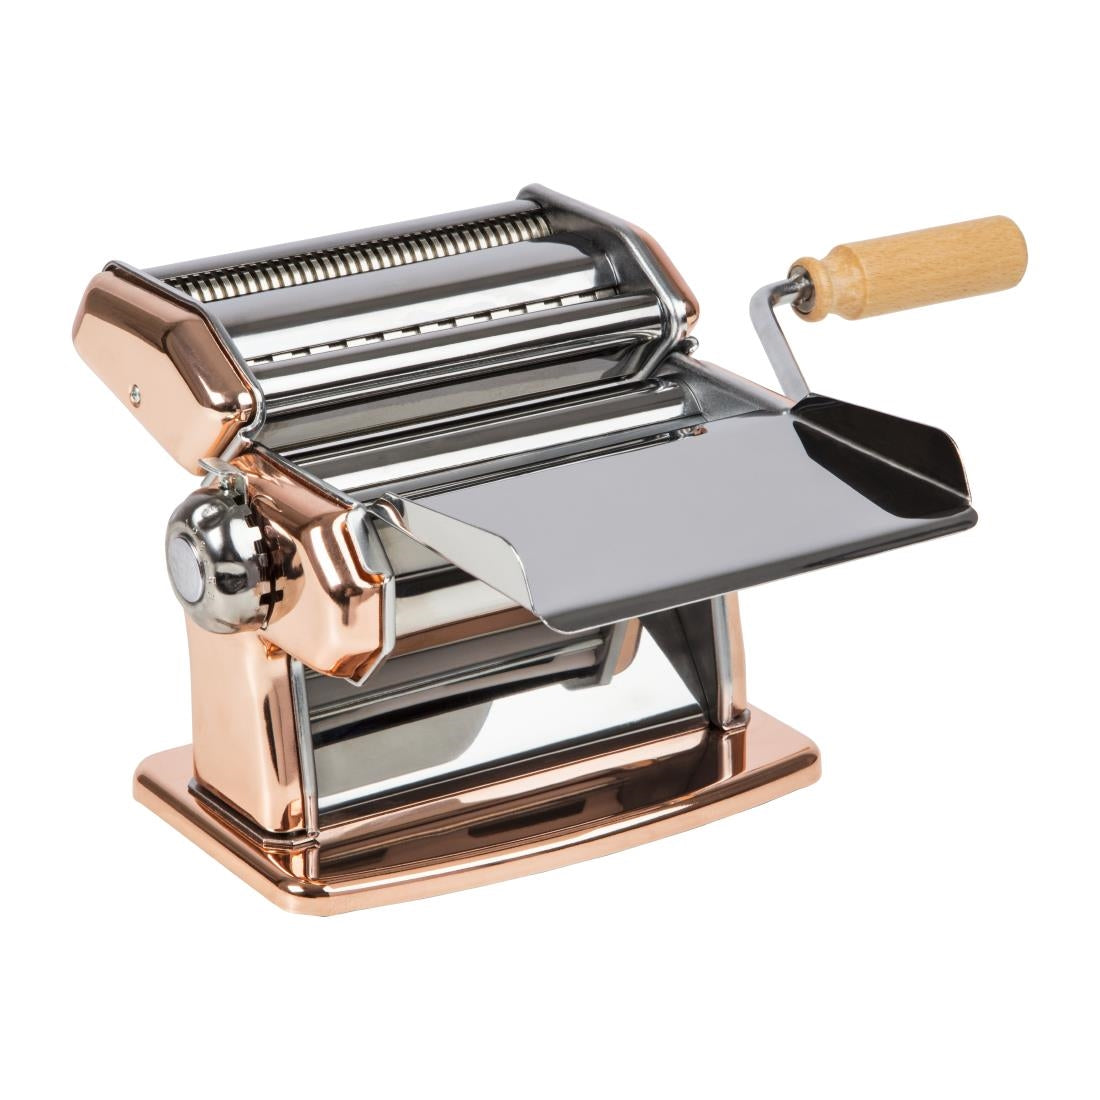 DA427 Imperial Manual Pasta Machine Copper